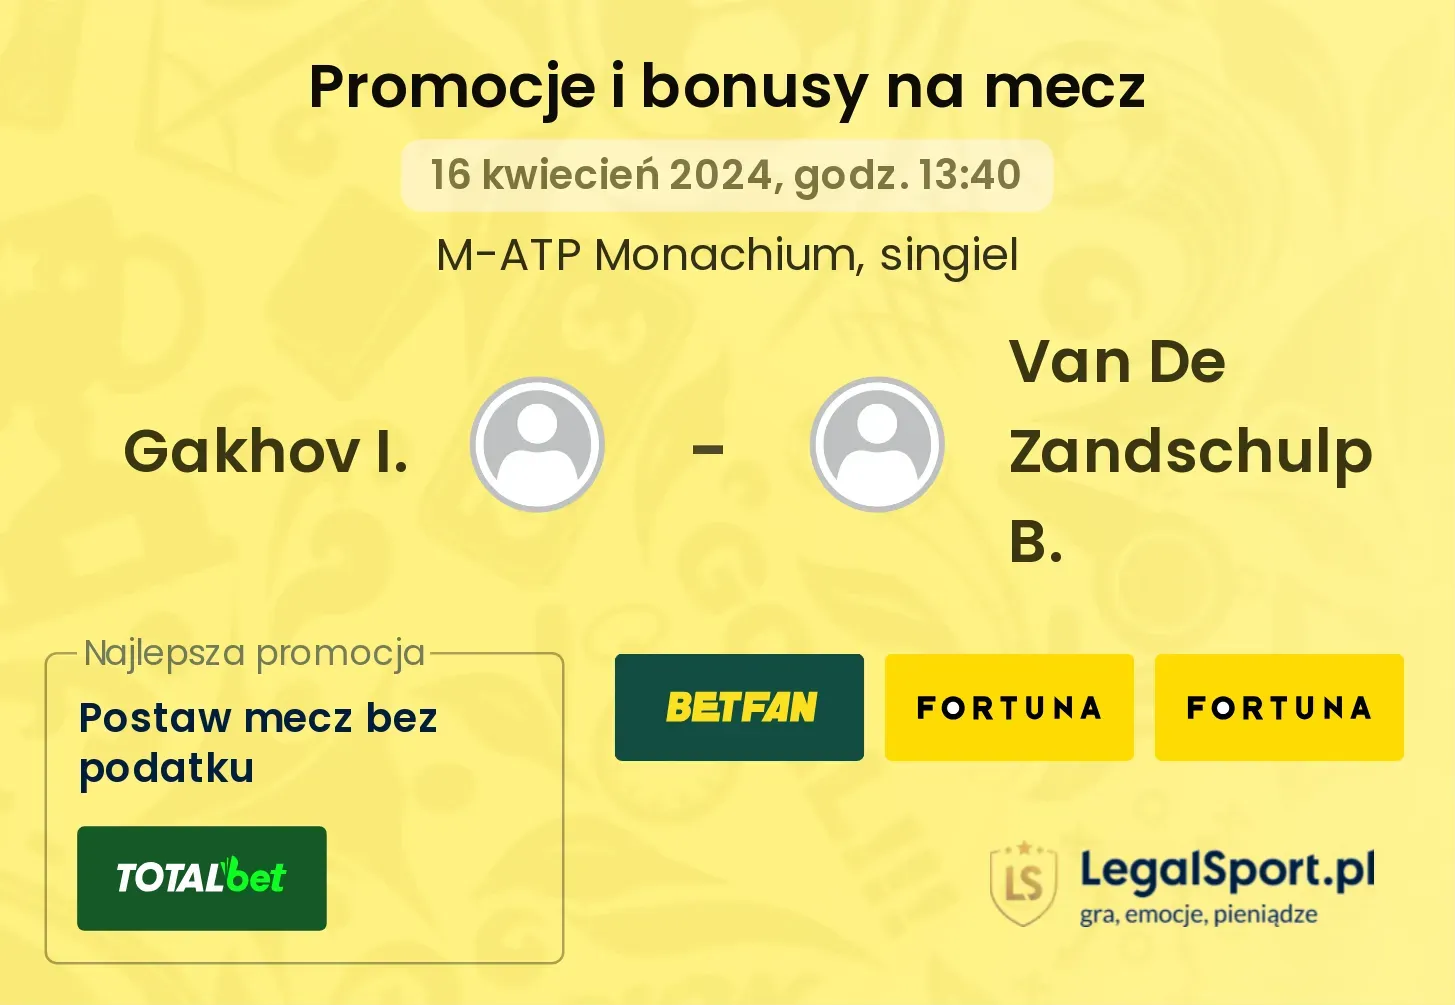 Gakhov I. - Van De Zandschulp B. promocje bonusy na mecz